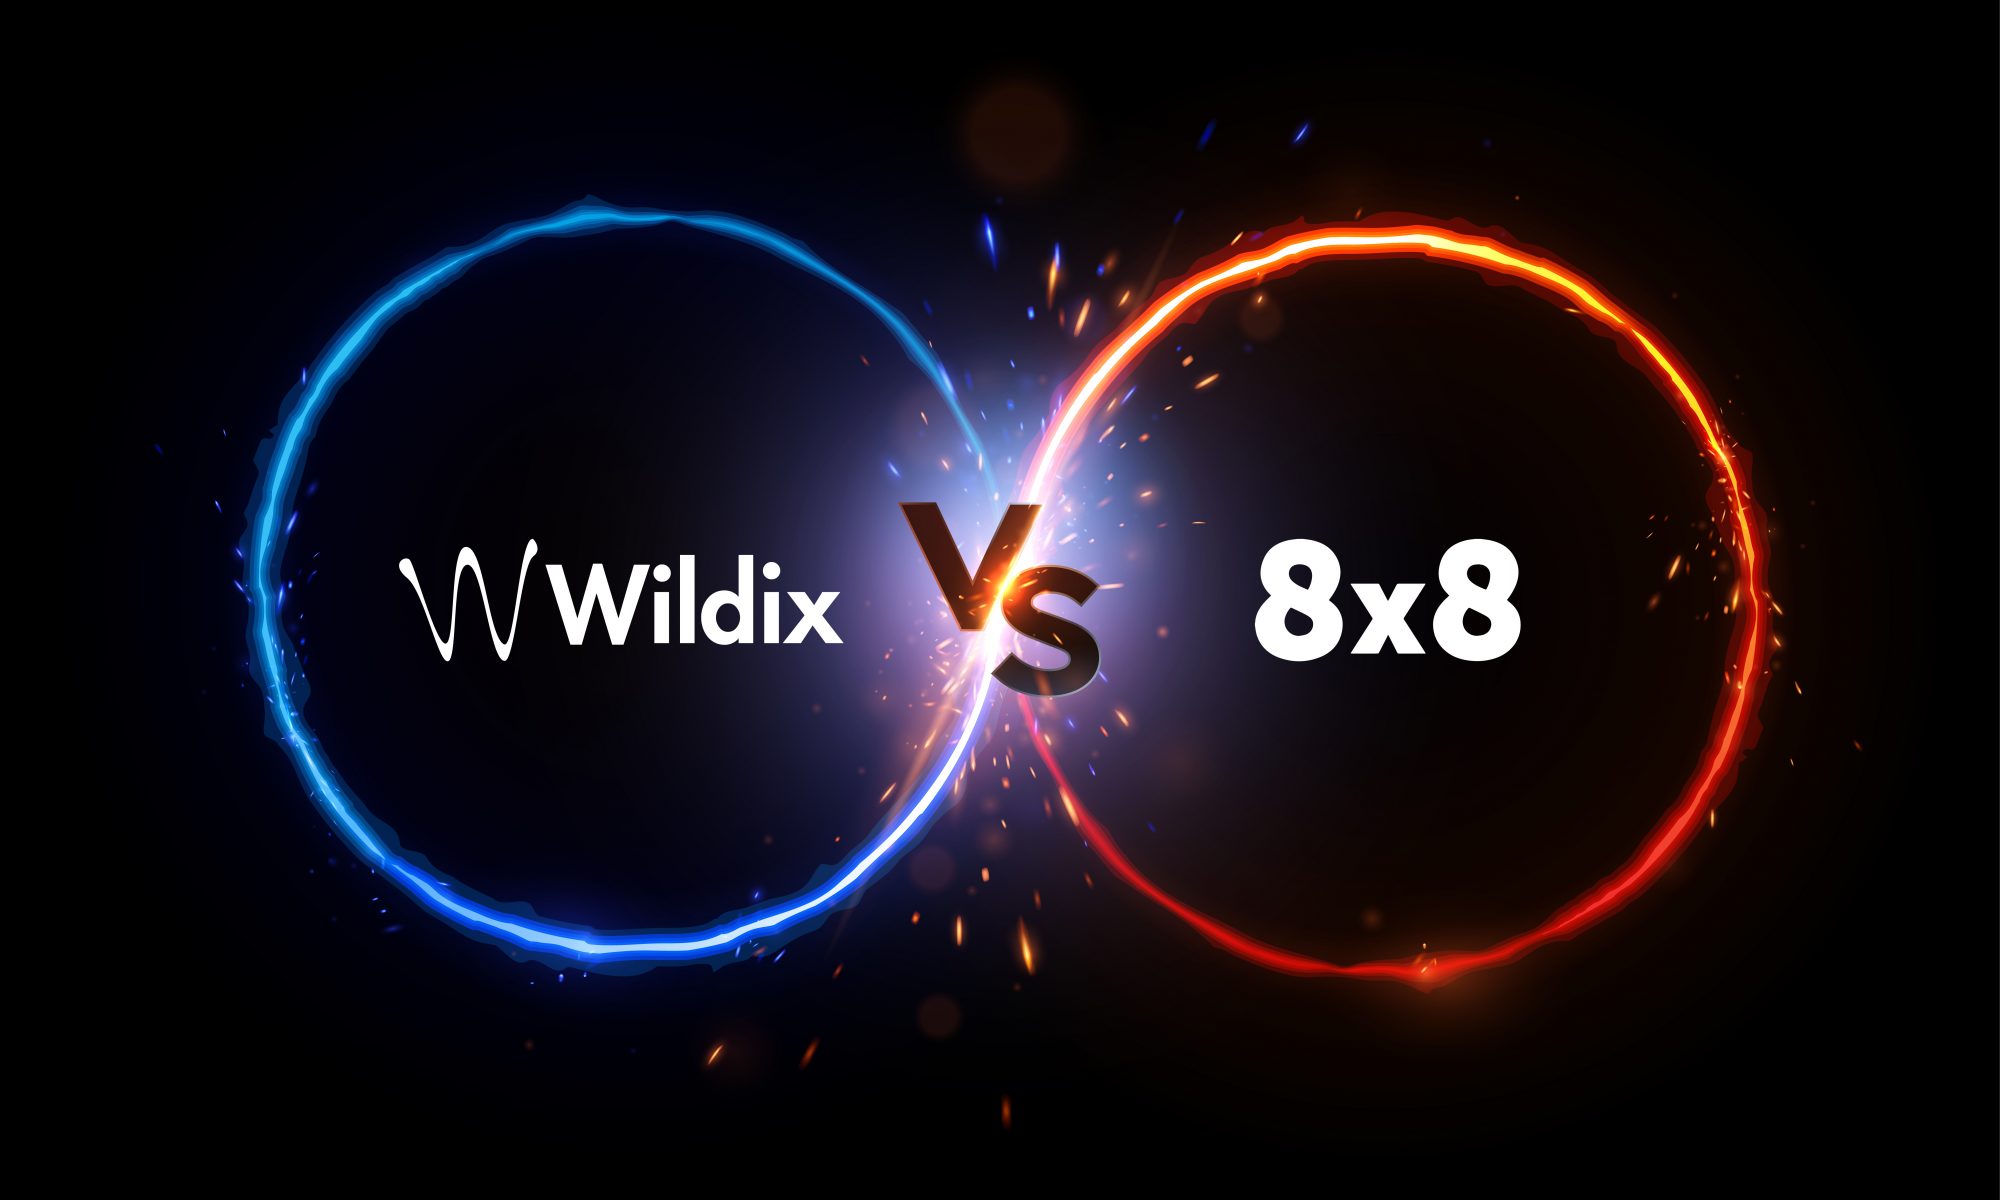 Wildix vs. 8x8